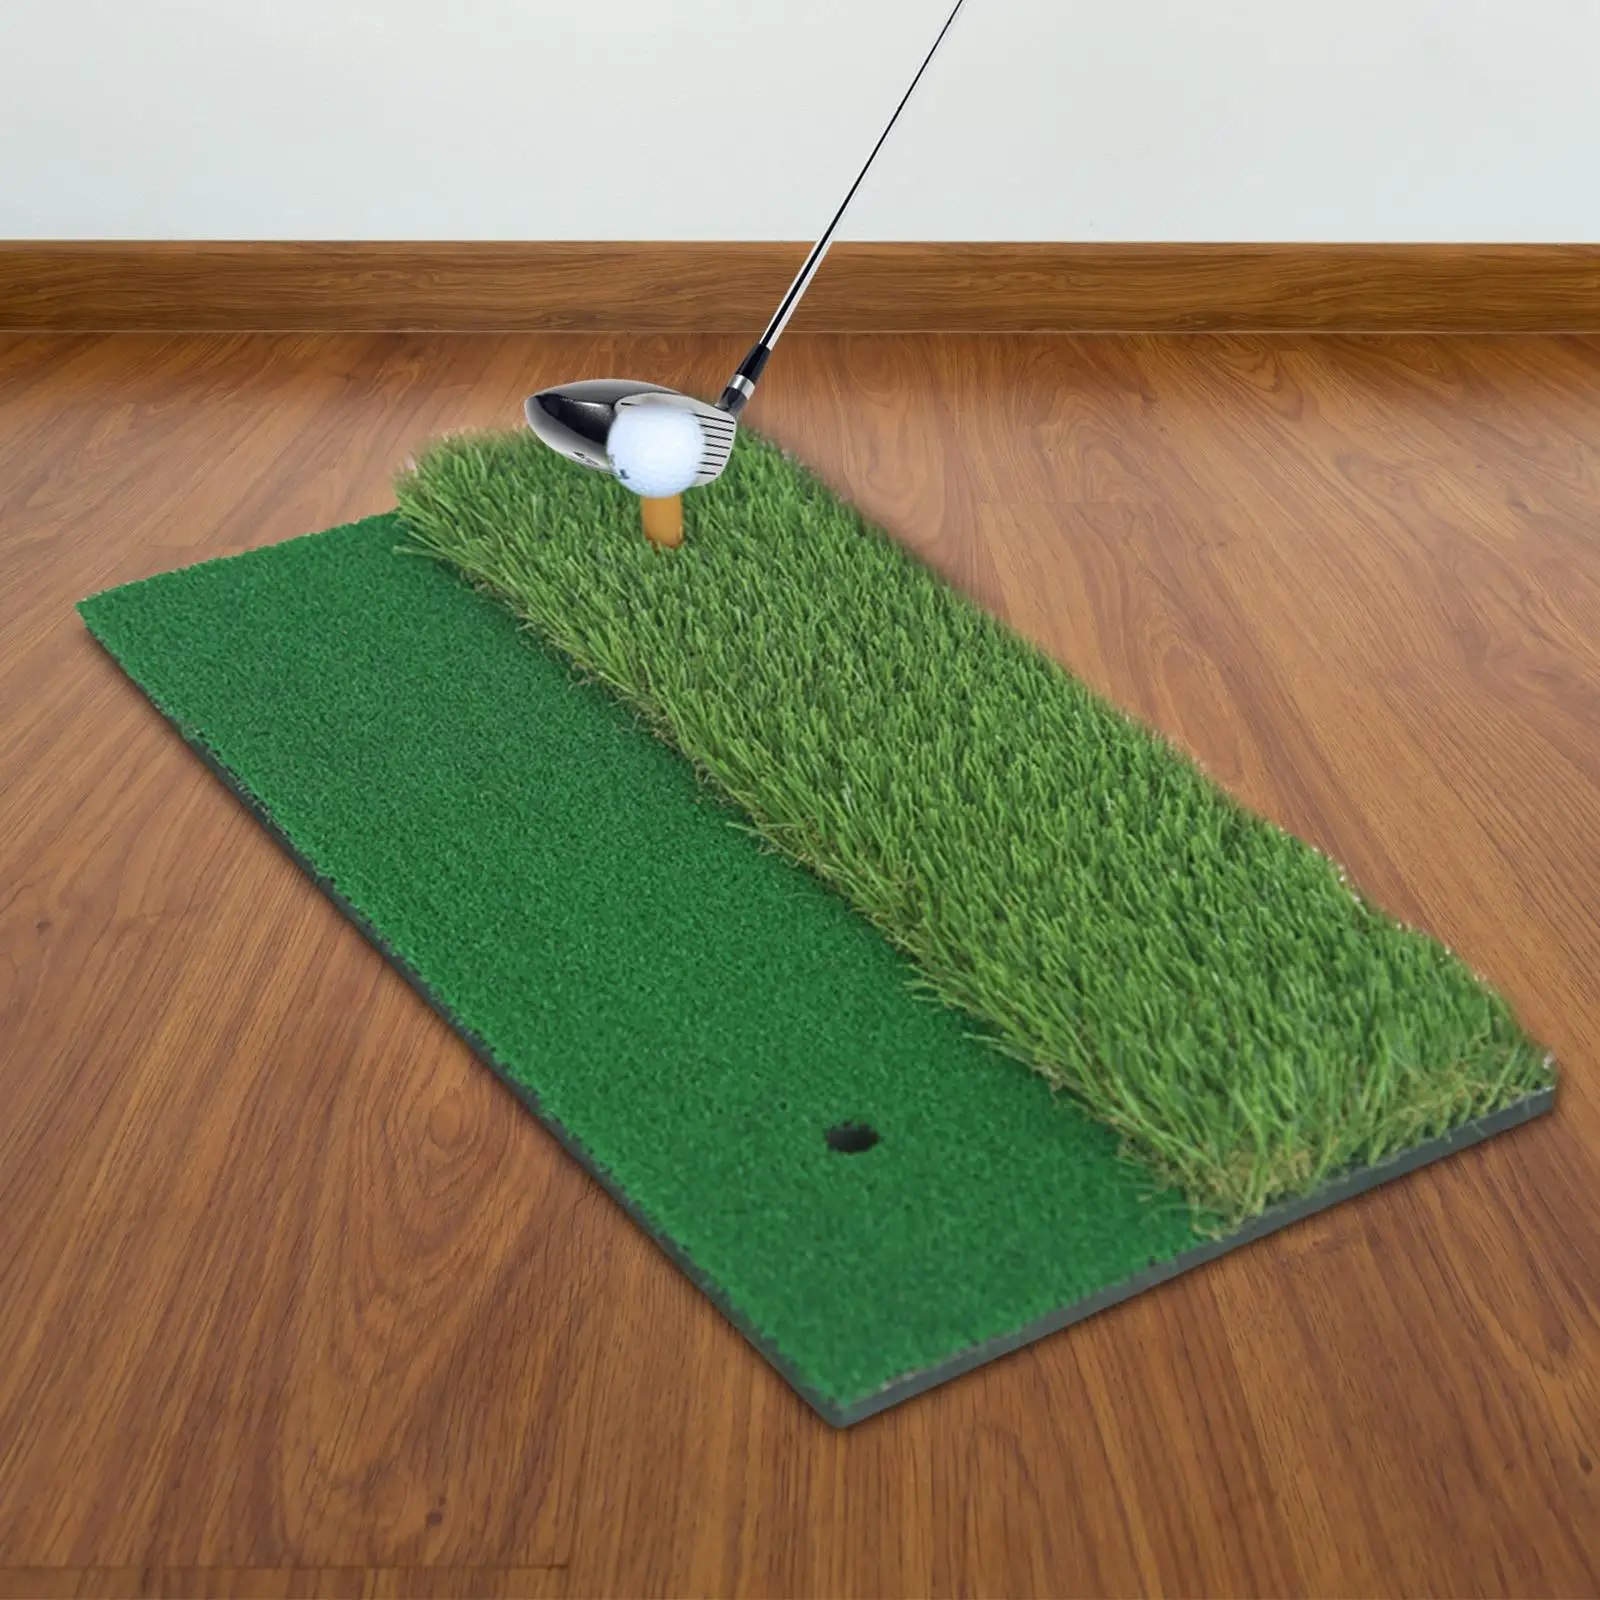 

Напольный коврик для тренировок Golf коврик для ударов, коррекция качели, прочный, 30 см x 60 см